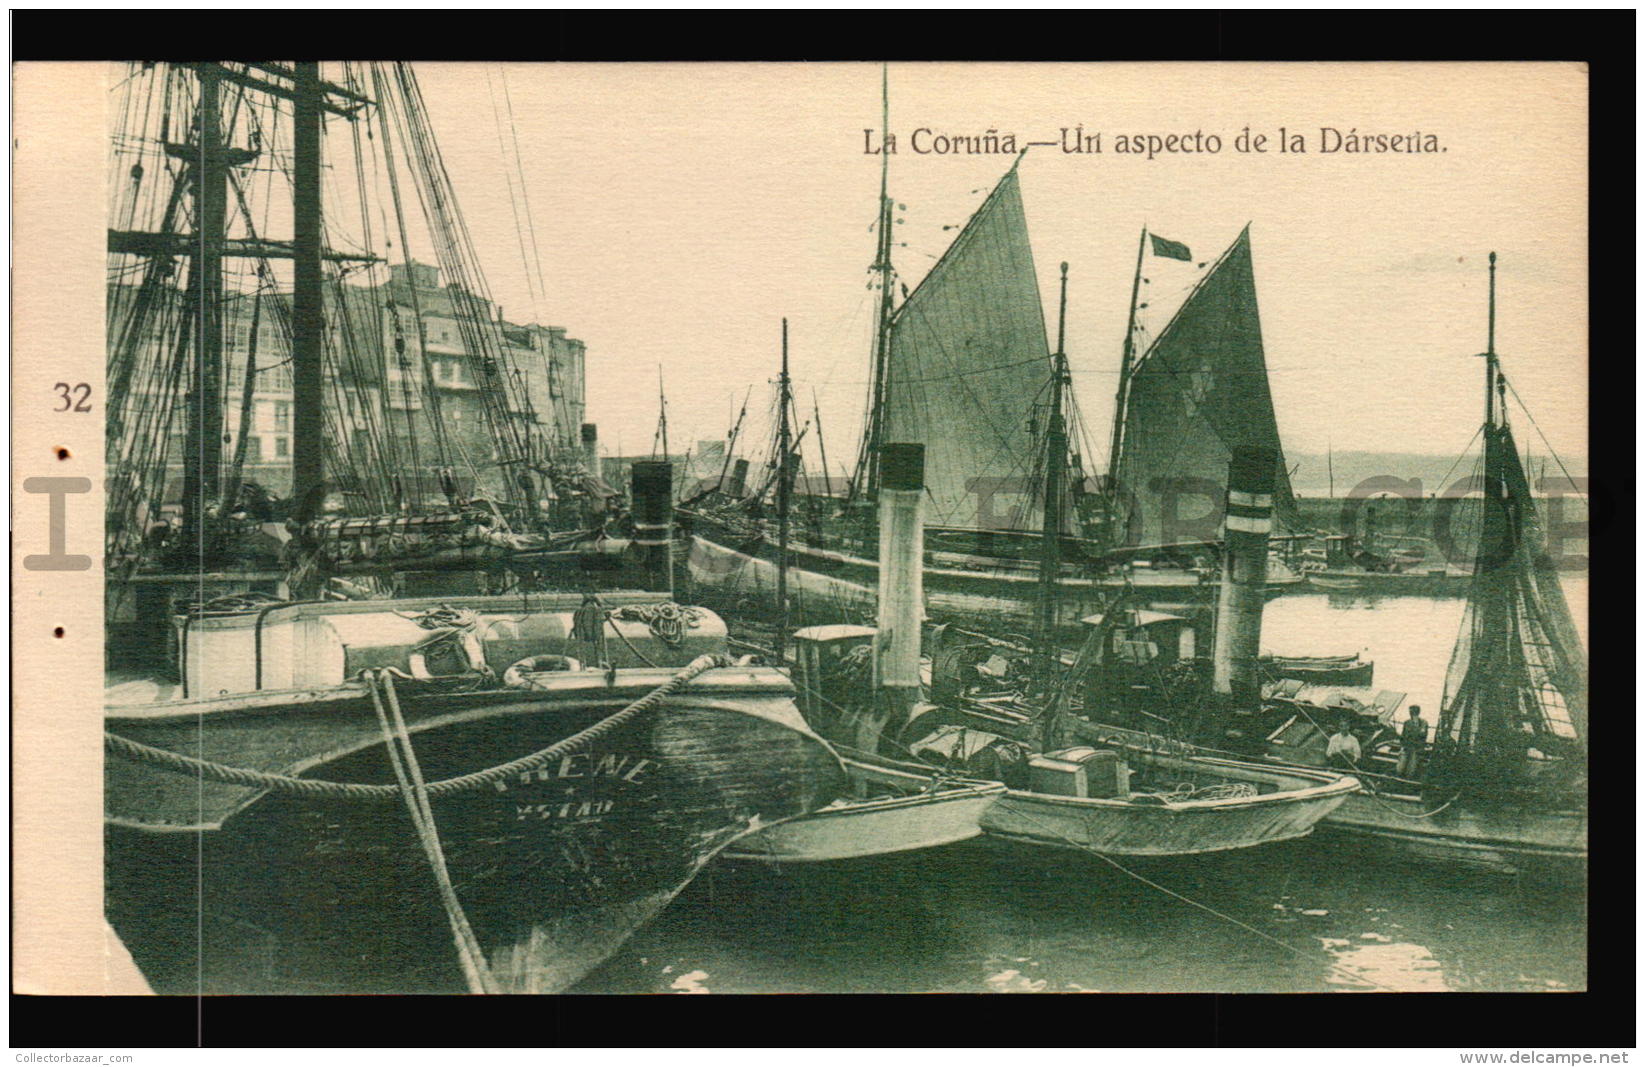 Darsena Llena De Botes Barcos Coru&ntilde;a Galicia Espa&ntilde;a Tarjeta Postal Vintage Original C1900 POSTCARD  CPA AK - La Coruña